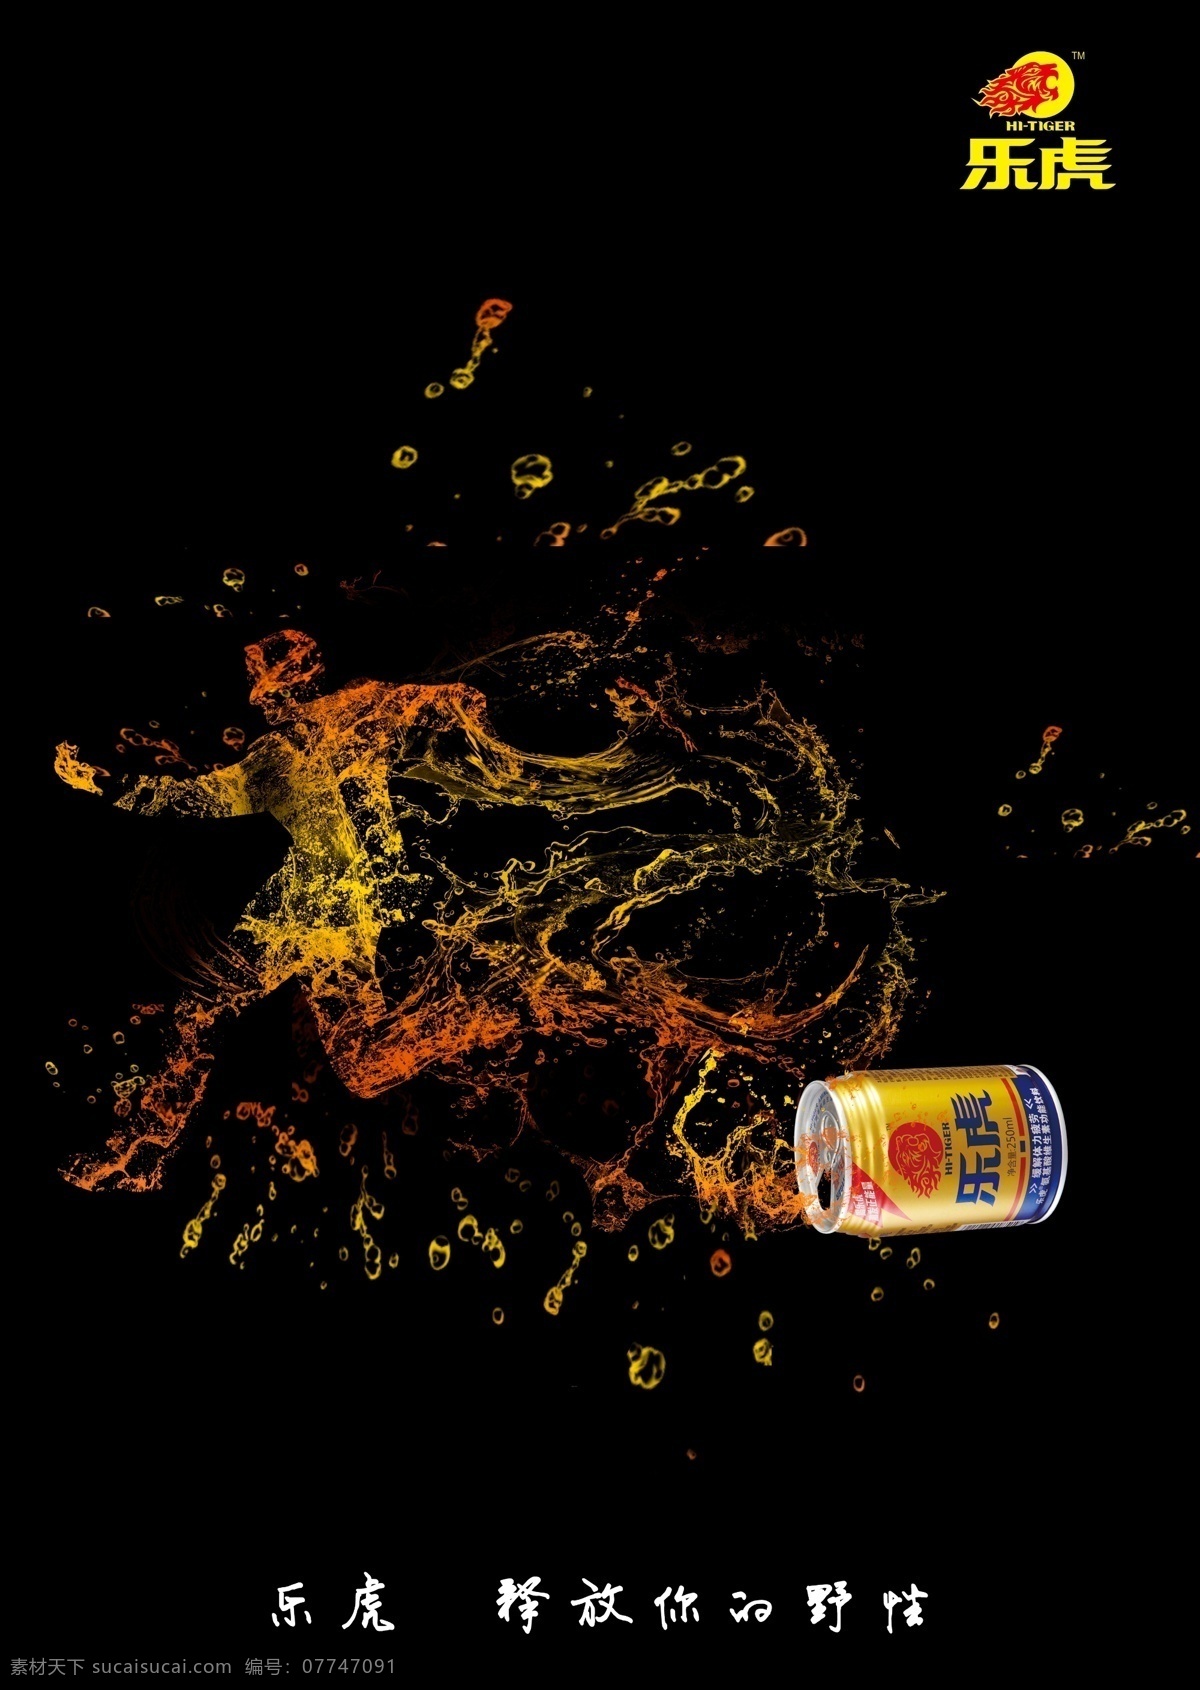 大广赛 乐 虎 功能型 饮料 创意设计 创意广告 原创广告 黑色